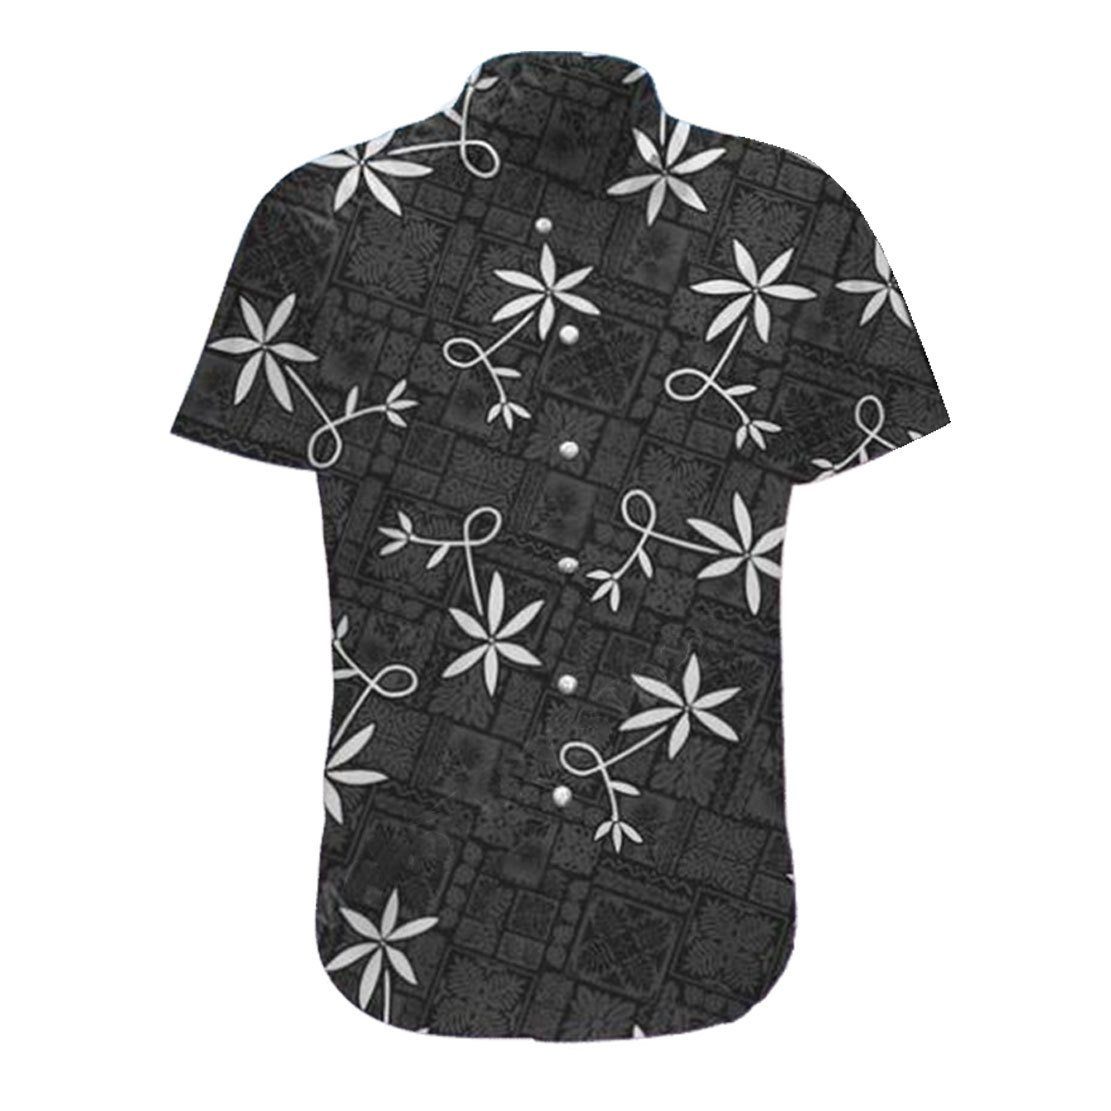 Gearhumans 3D ELV PRL Black Hawaii Shirt ZB290317 Hawai Shirt Short Sleeve Shirt S 